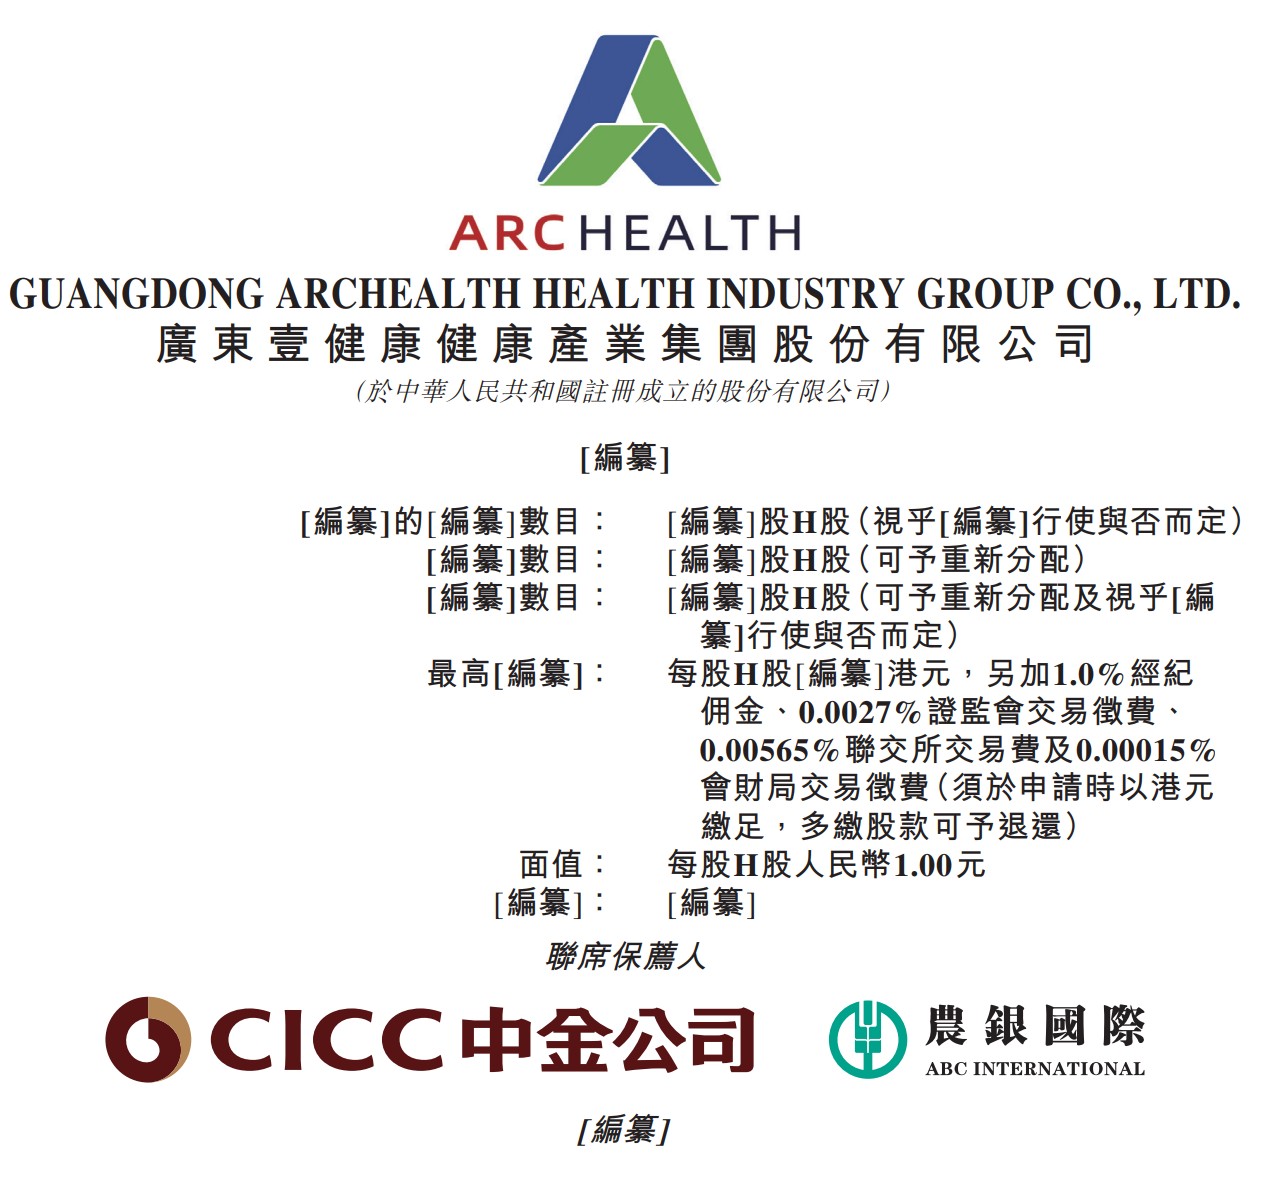 新股消息 | 壹健康集团首次递表港交所 是中国数字化健康管理领域领先企业